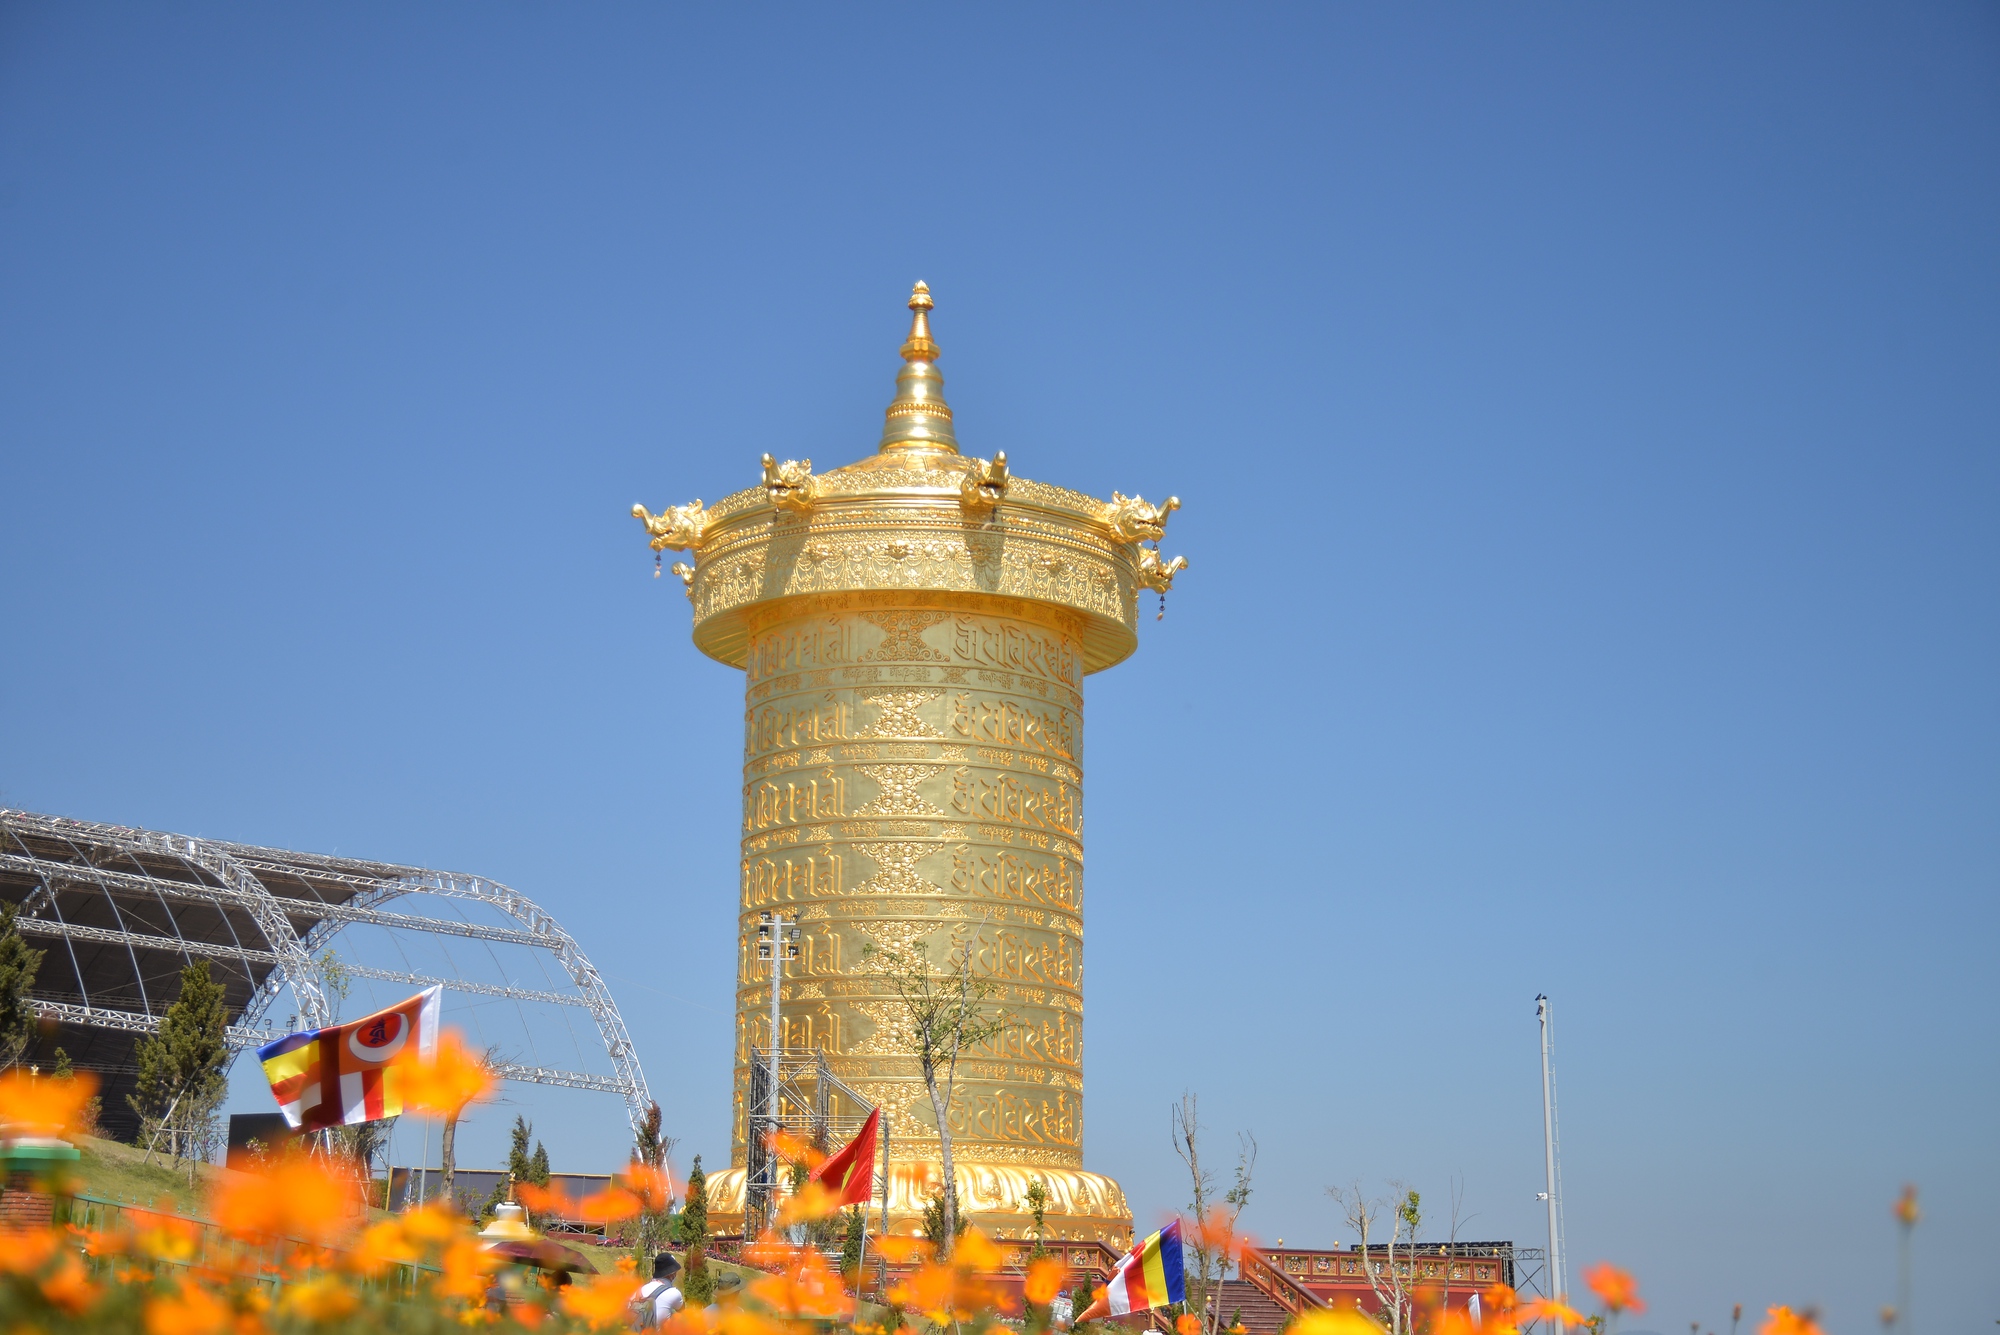 Cận cảnh đại bảo tháp kinh luân dát vàng 24k lớn nhất thế giới tại Lâm Đồng - Ảnh 6.